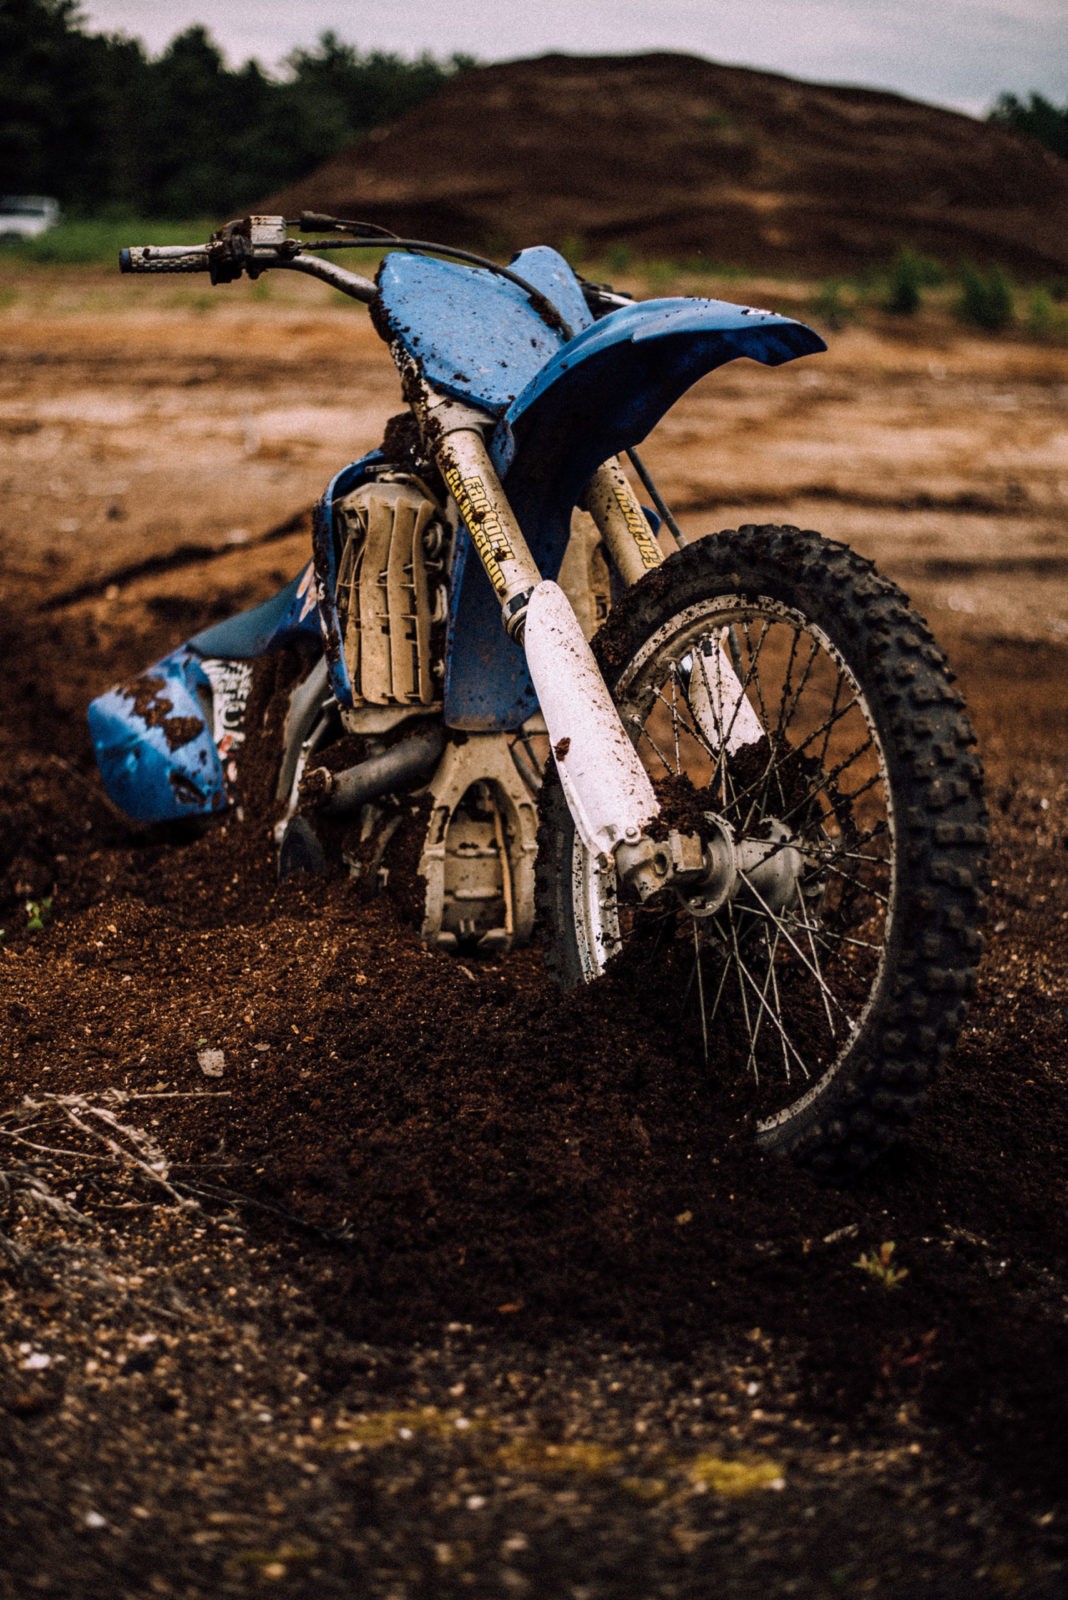 Motorbike in mud